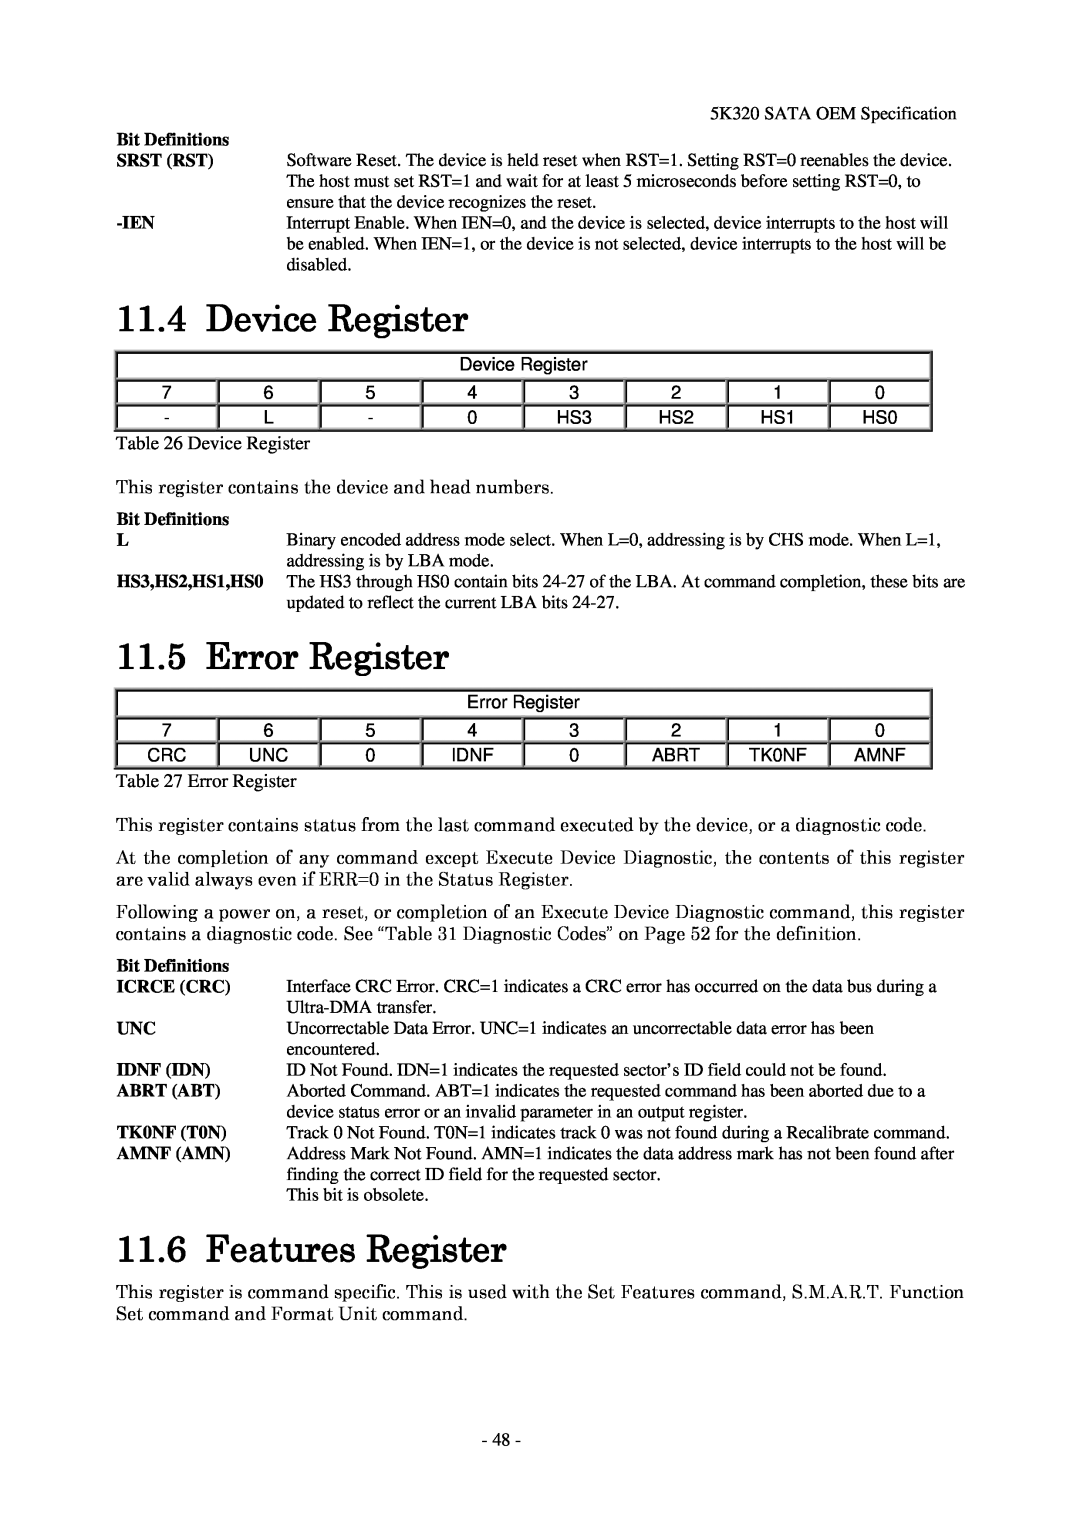 Hitachi HTS543232L9A300, HTS543280L9SA00, HTS543225L9A300 manual Device Register, Error Register, Features Register 